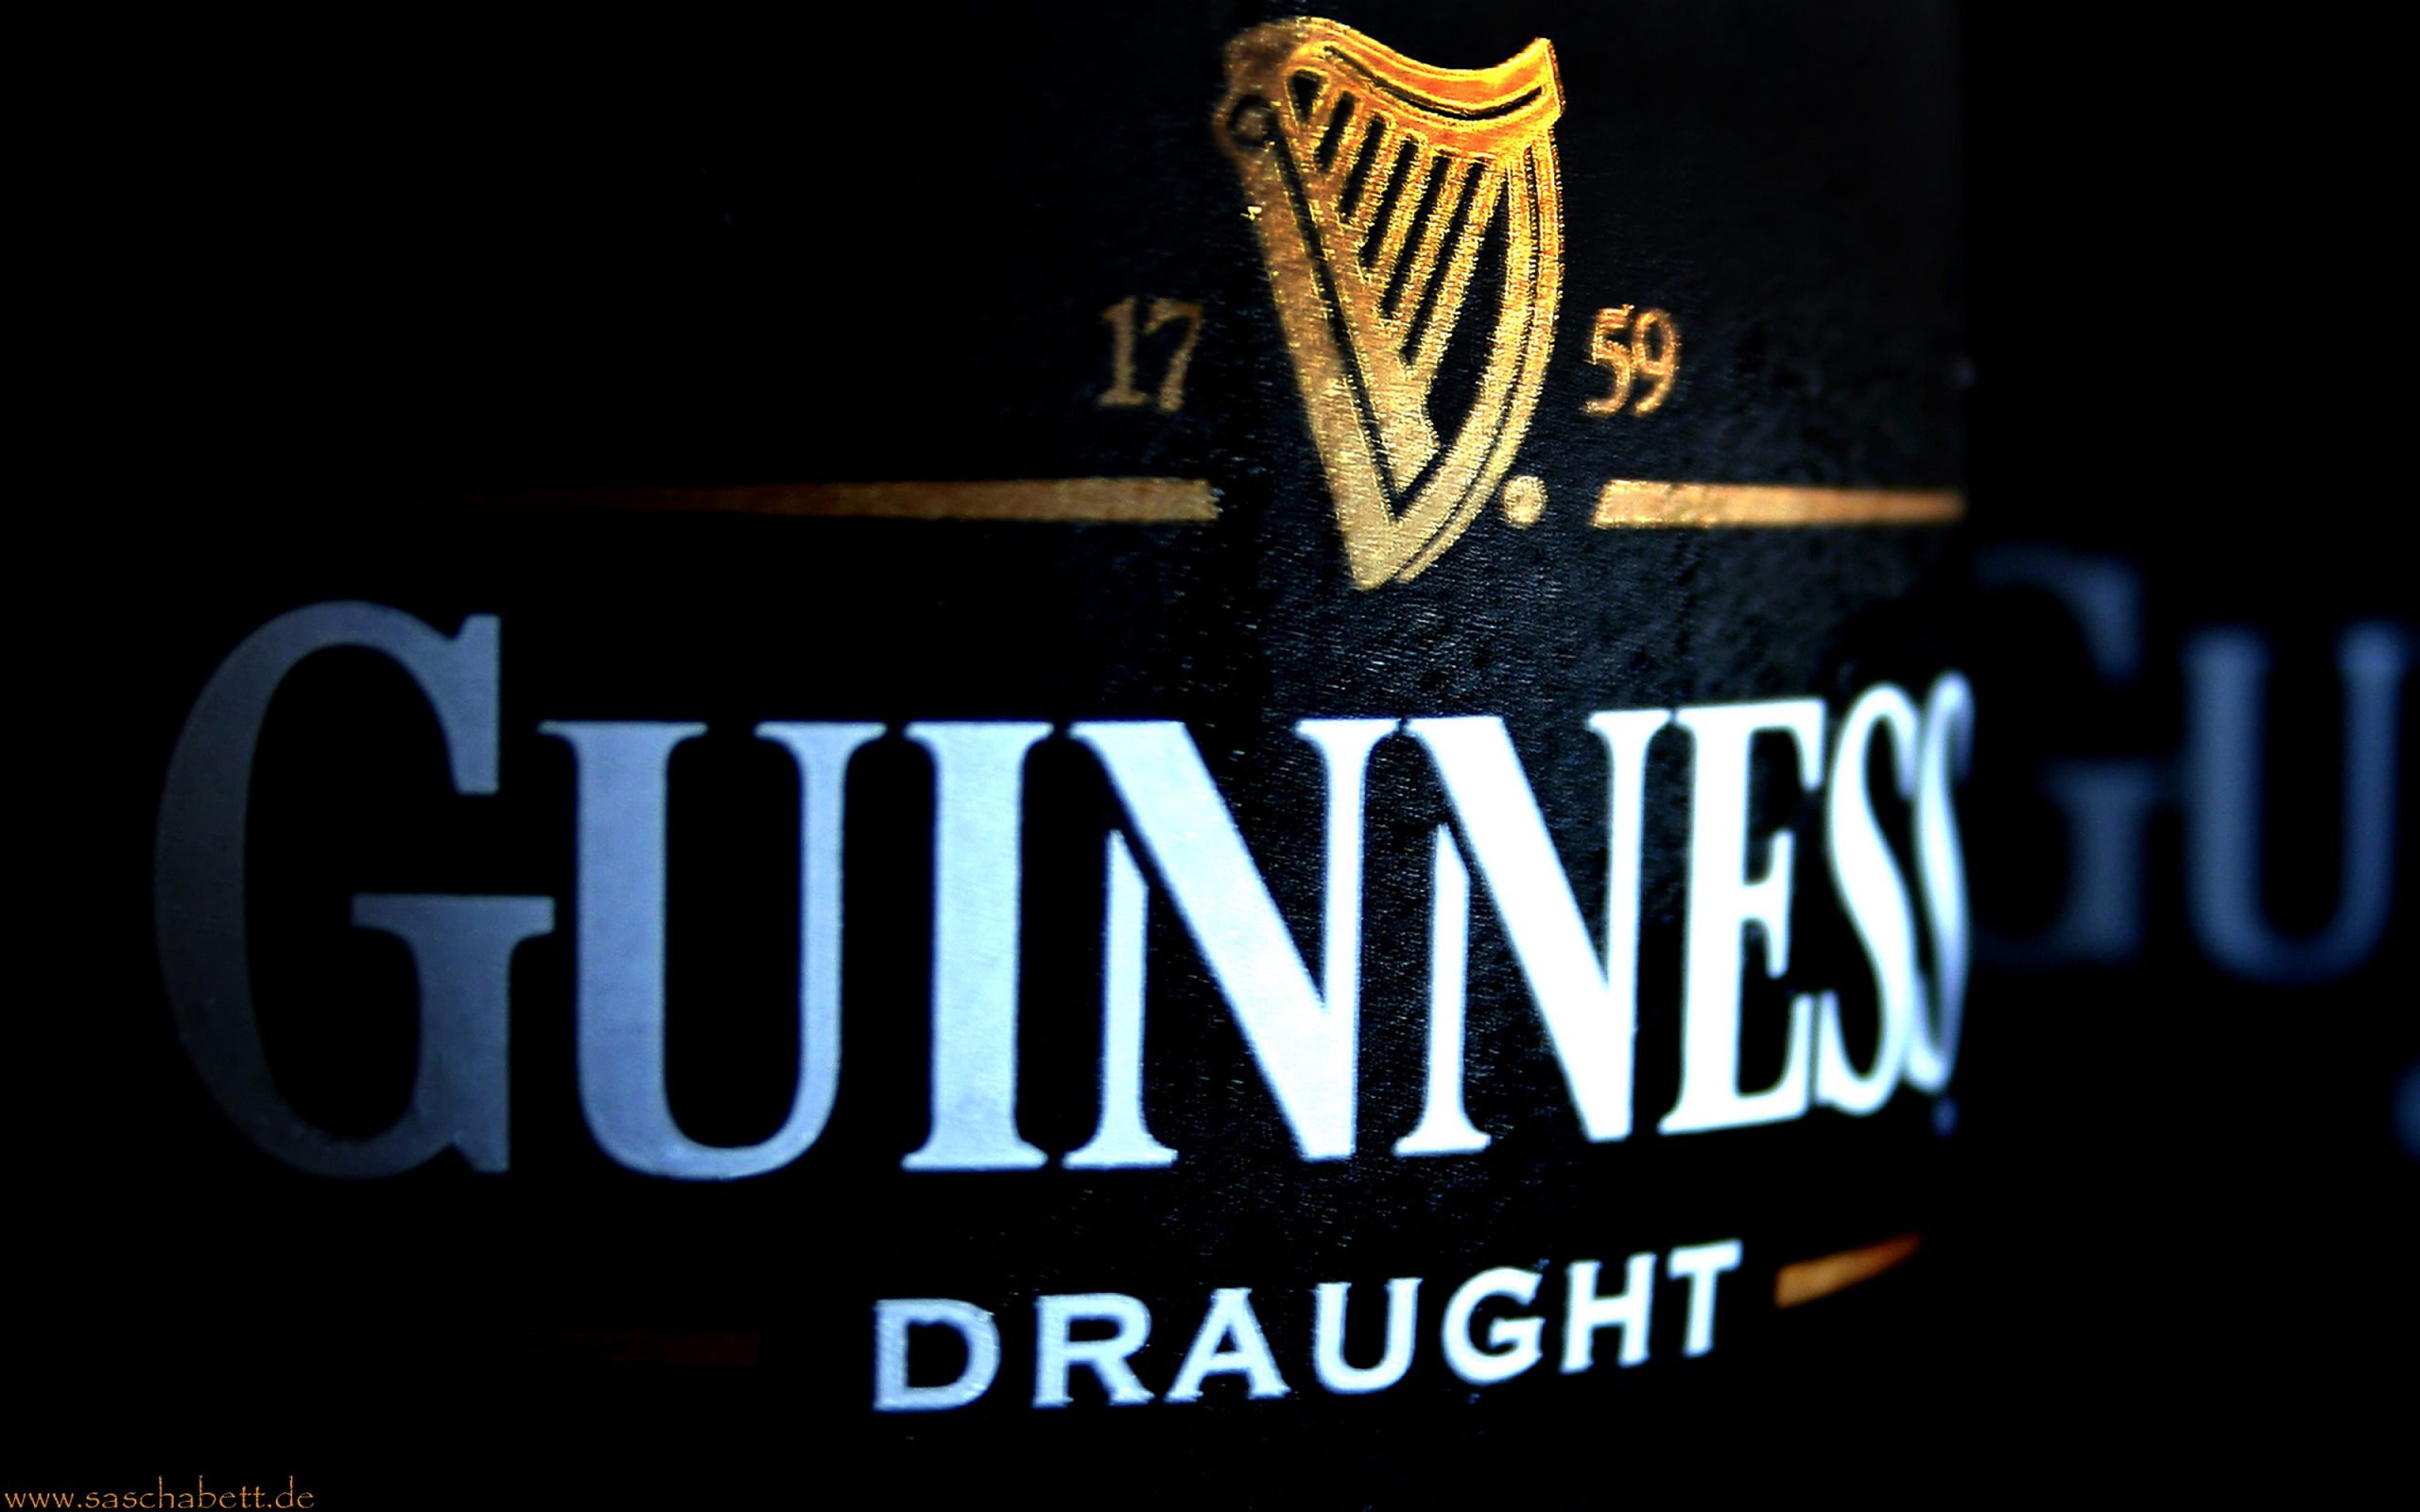 Télécharger des fonds d'écran Guinness HD